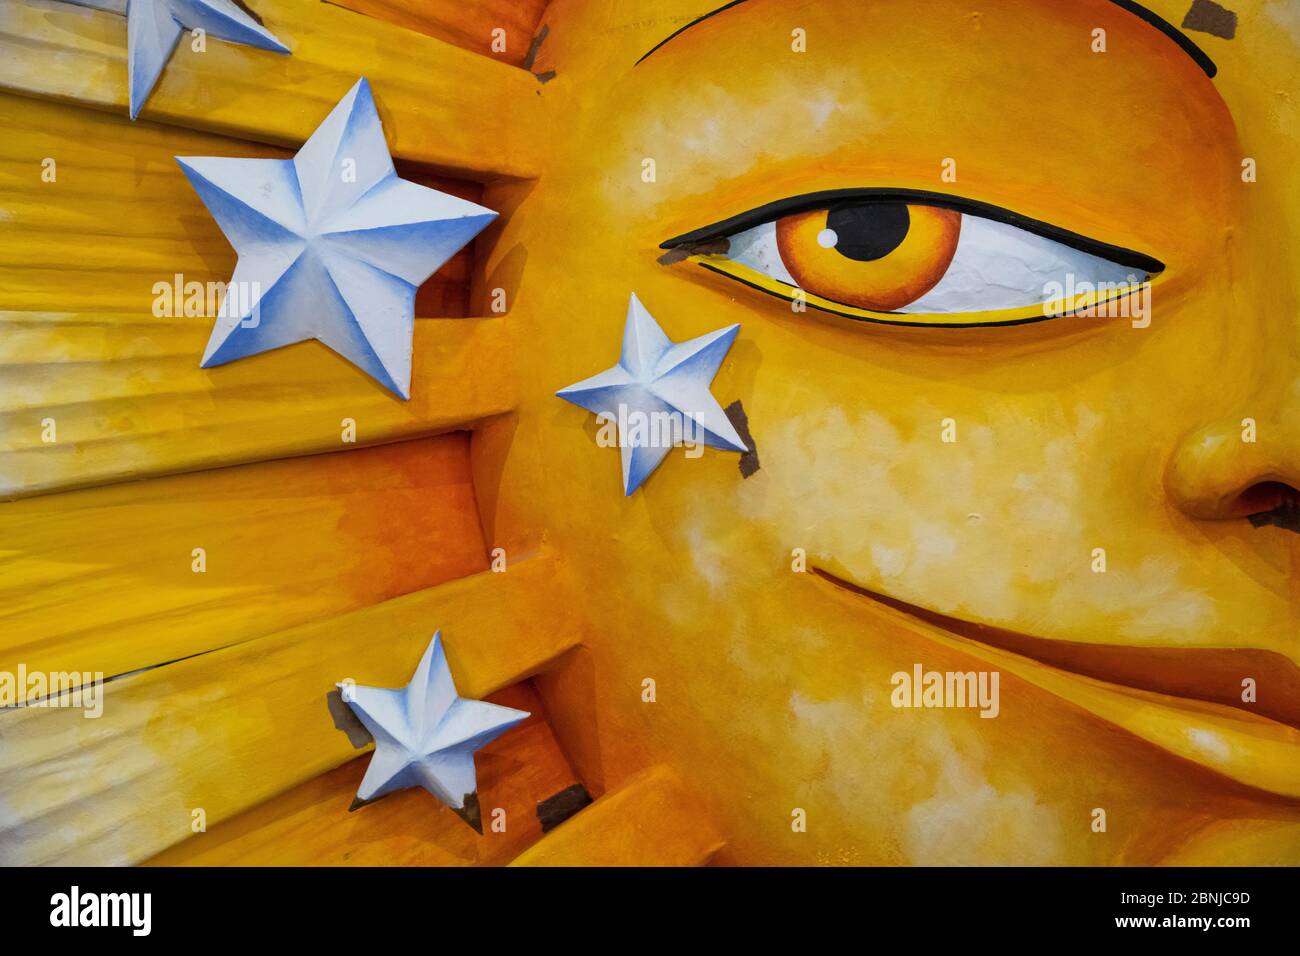 Dettaglio di un sole gigante fatto di polistirolo che apparirà su un galleggiante di Mardis Gras, New Orleans, Louisiana, Stati Uniti d'America, Nord America Foto Stock